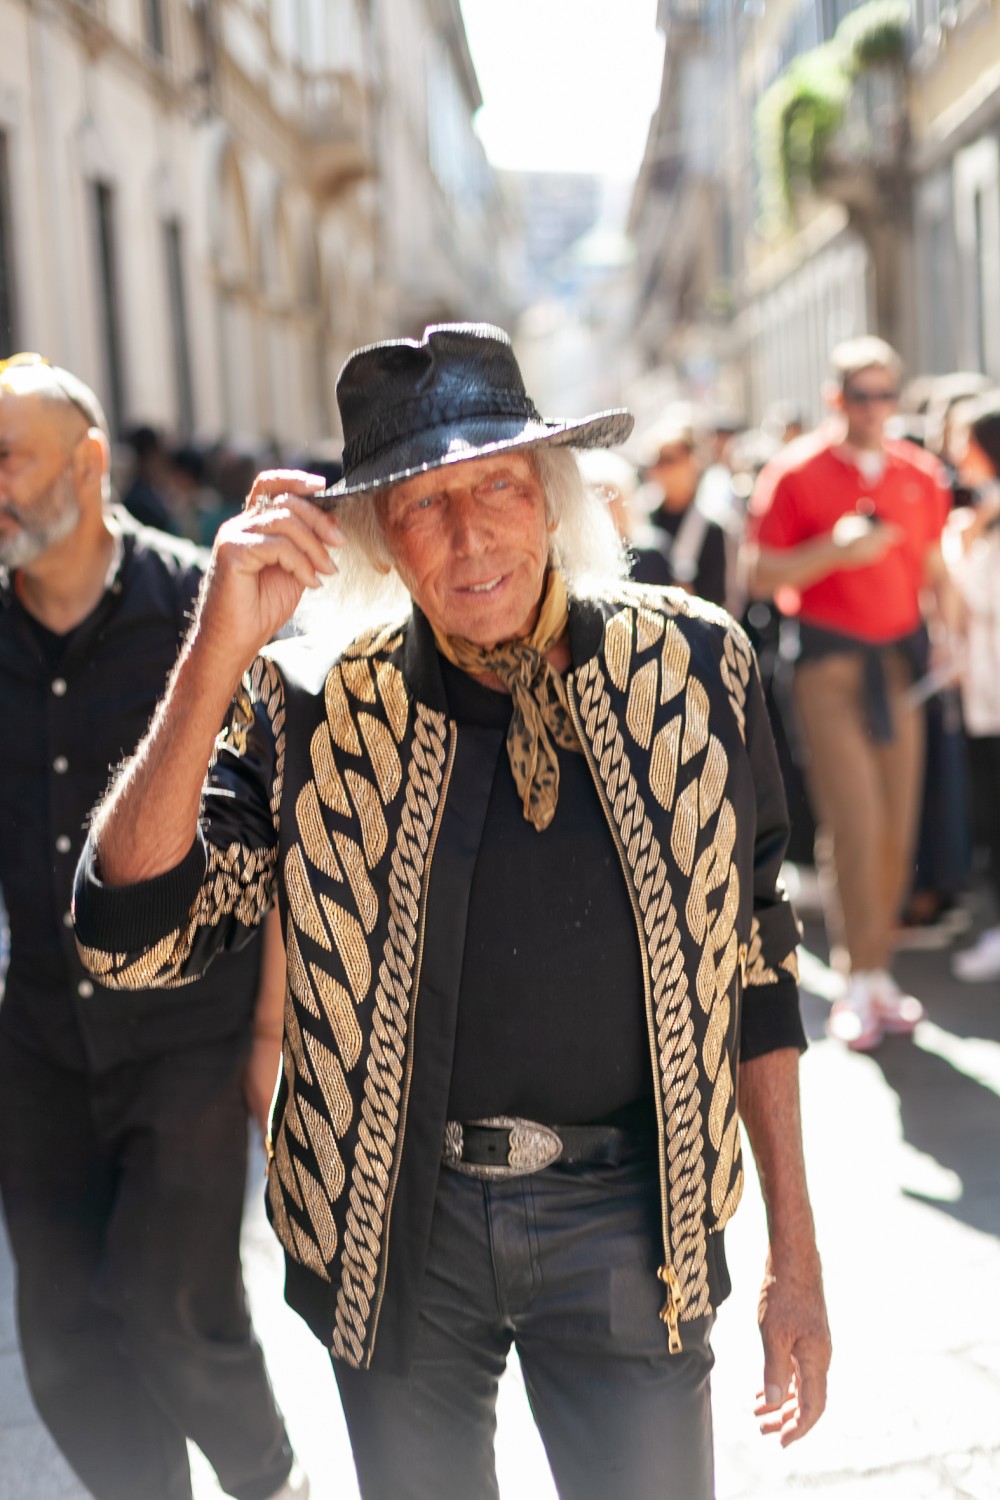 Без границ: в чем особенность streetstyle образов Недели моды в Милане?